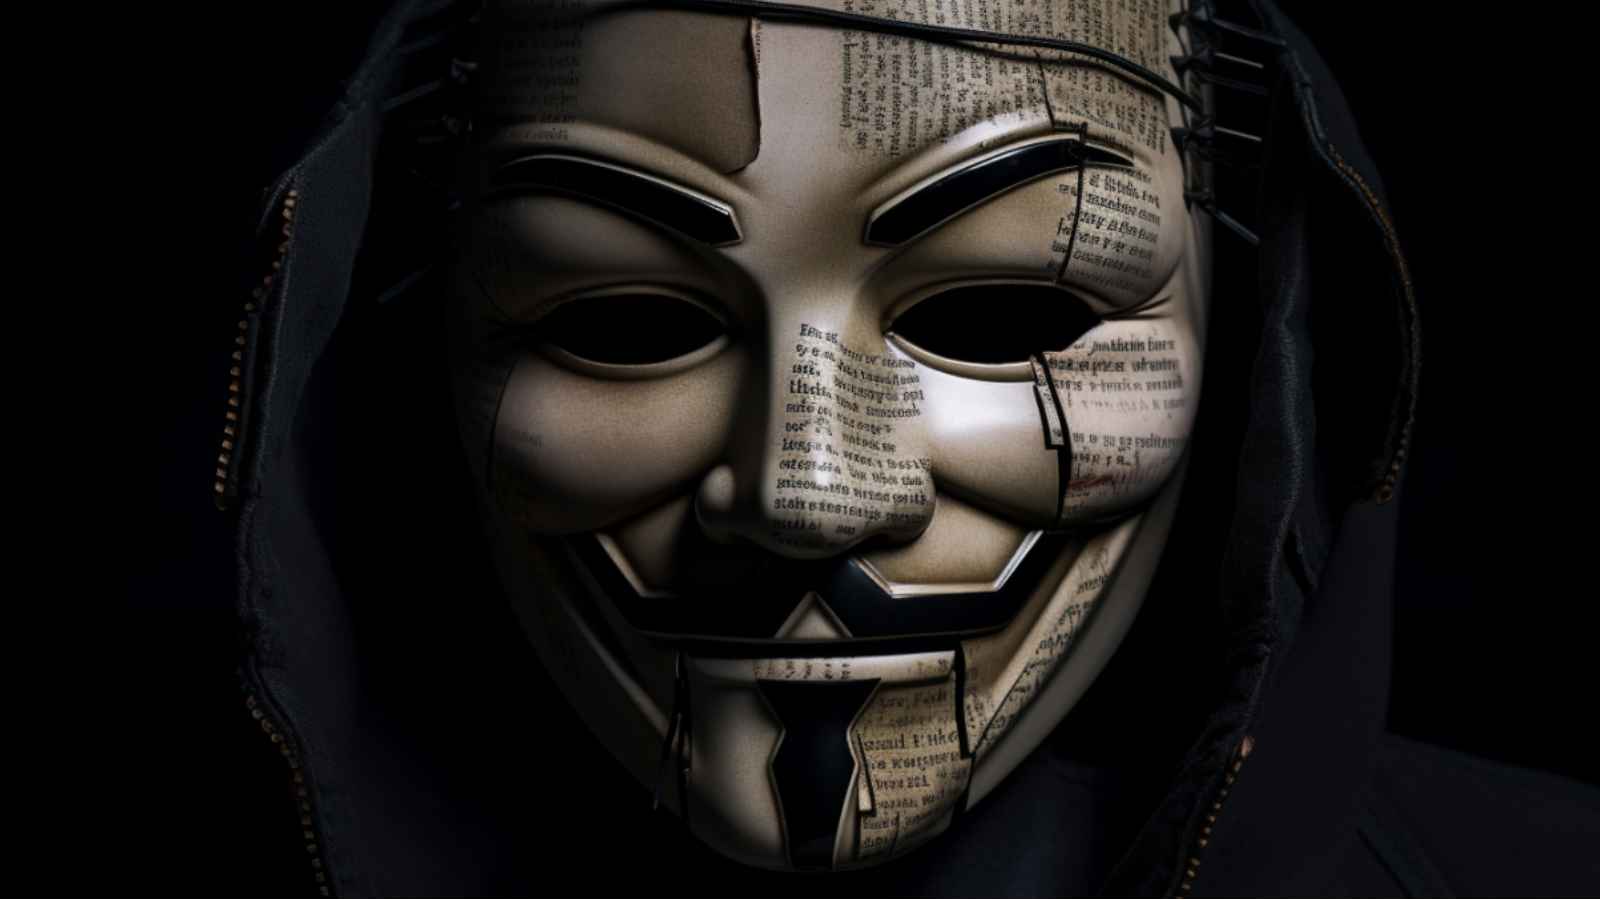 Les frères Wachowski, connus pour Matrix, ont adapté le scénario de V pour Vendetta